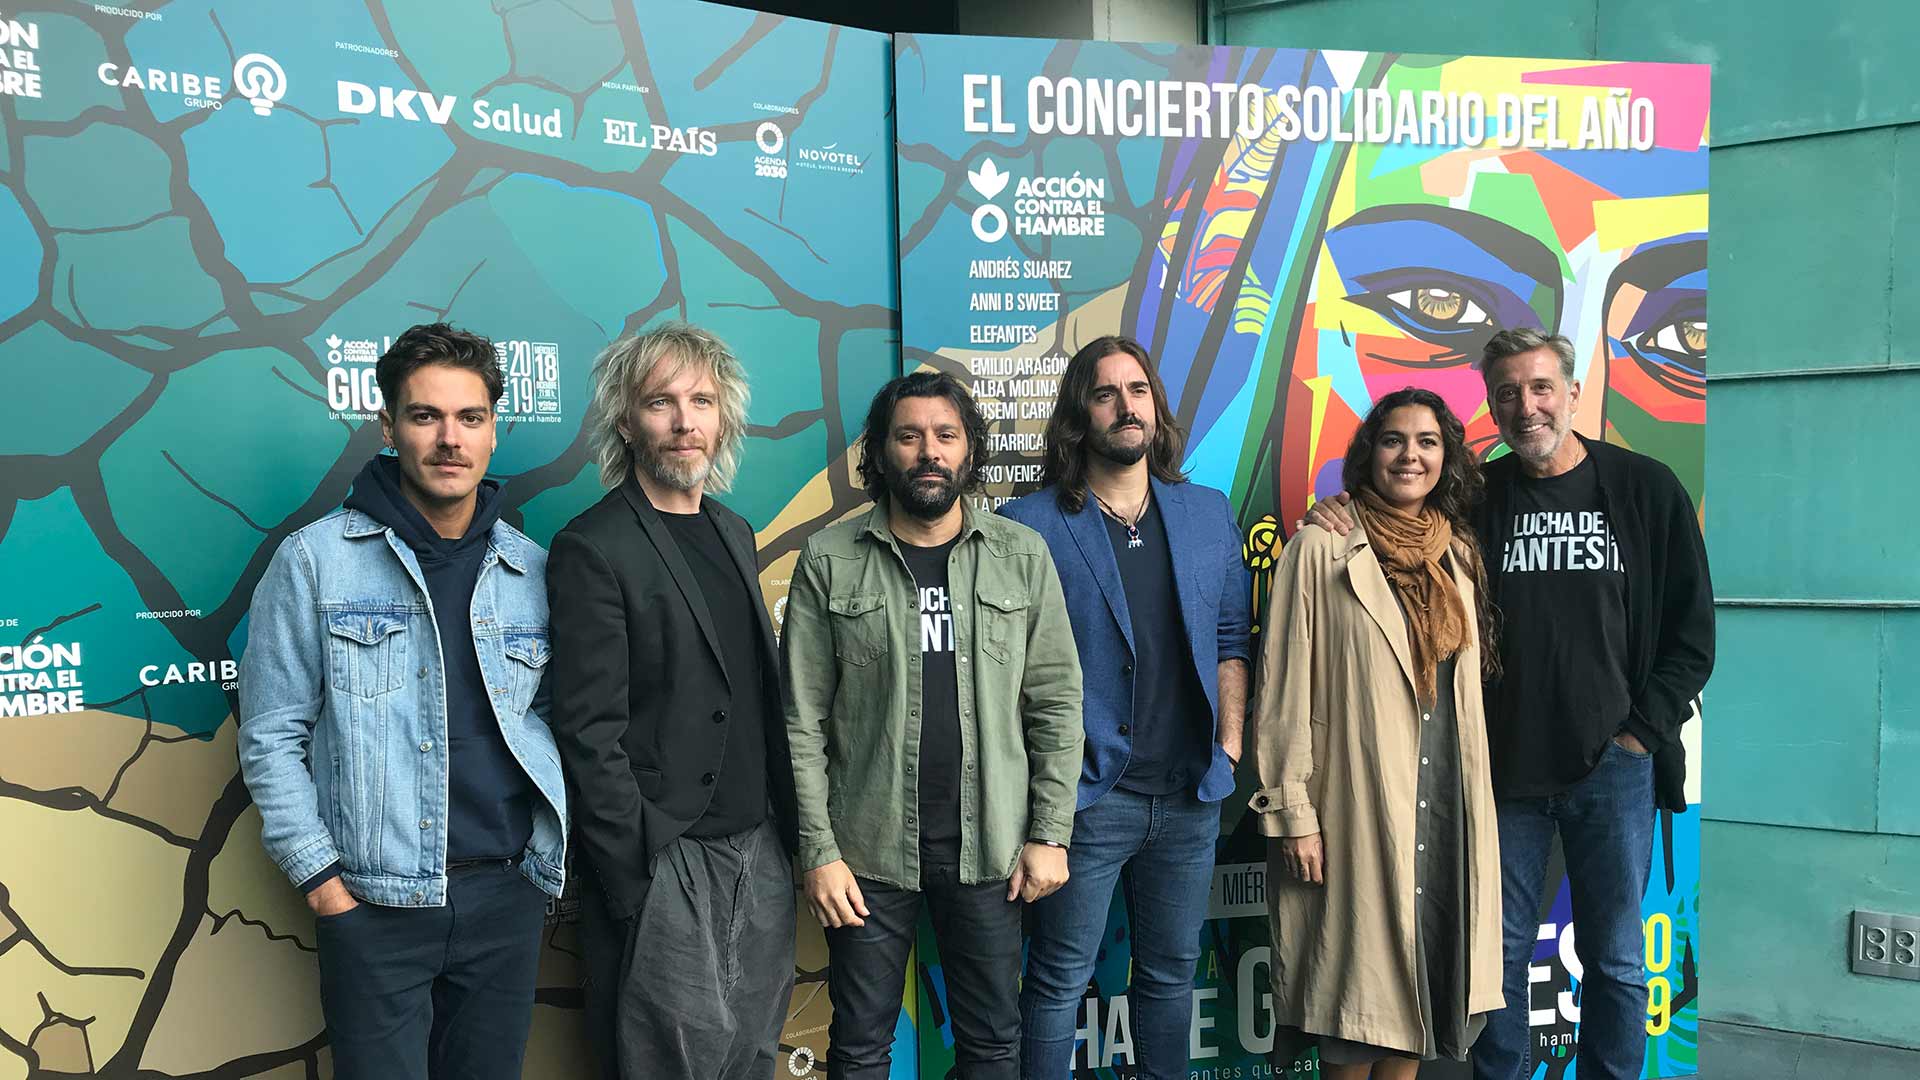 Mala Rodríguez, Andrés Suárez, Viva Suecia y otros artistas se suman al concierto solidario ‘Lucha de gigantes’ 1